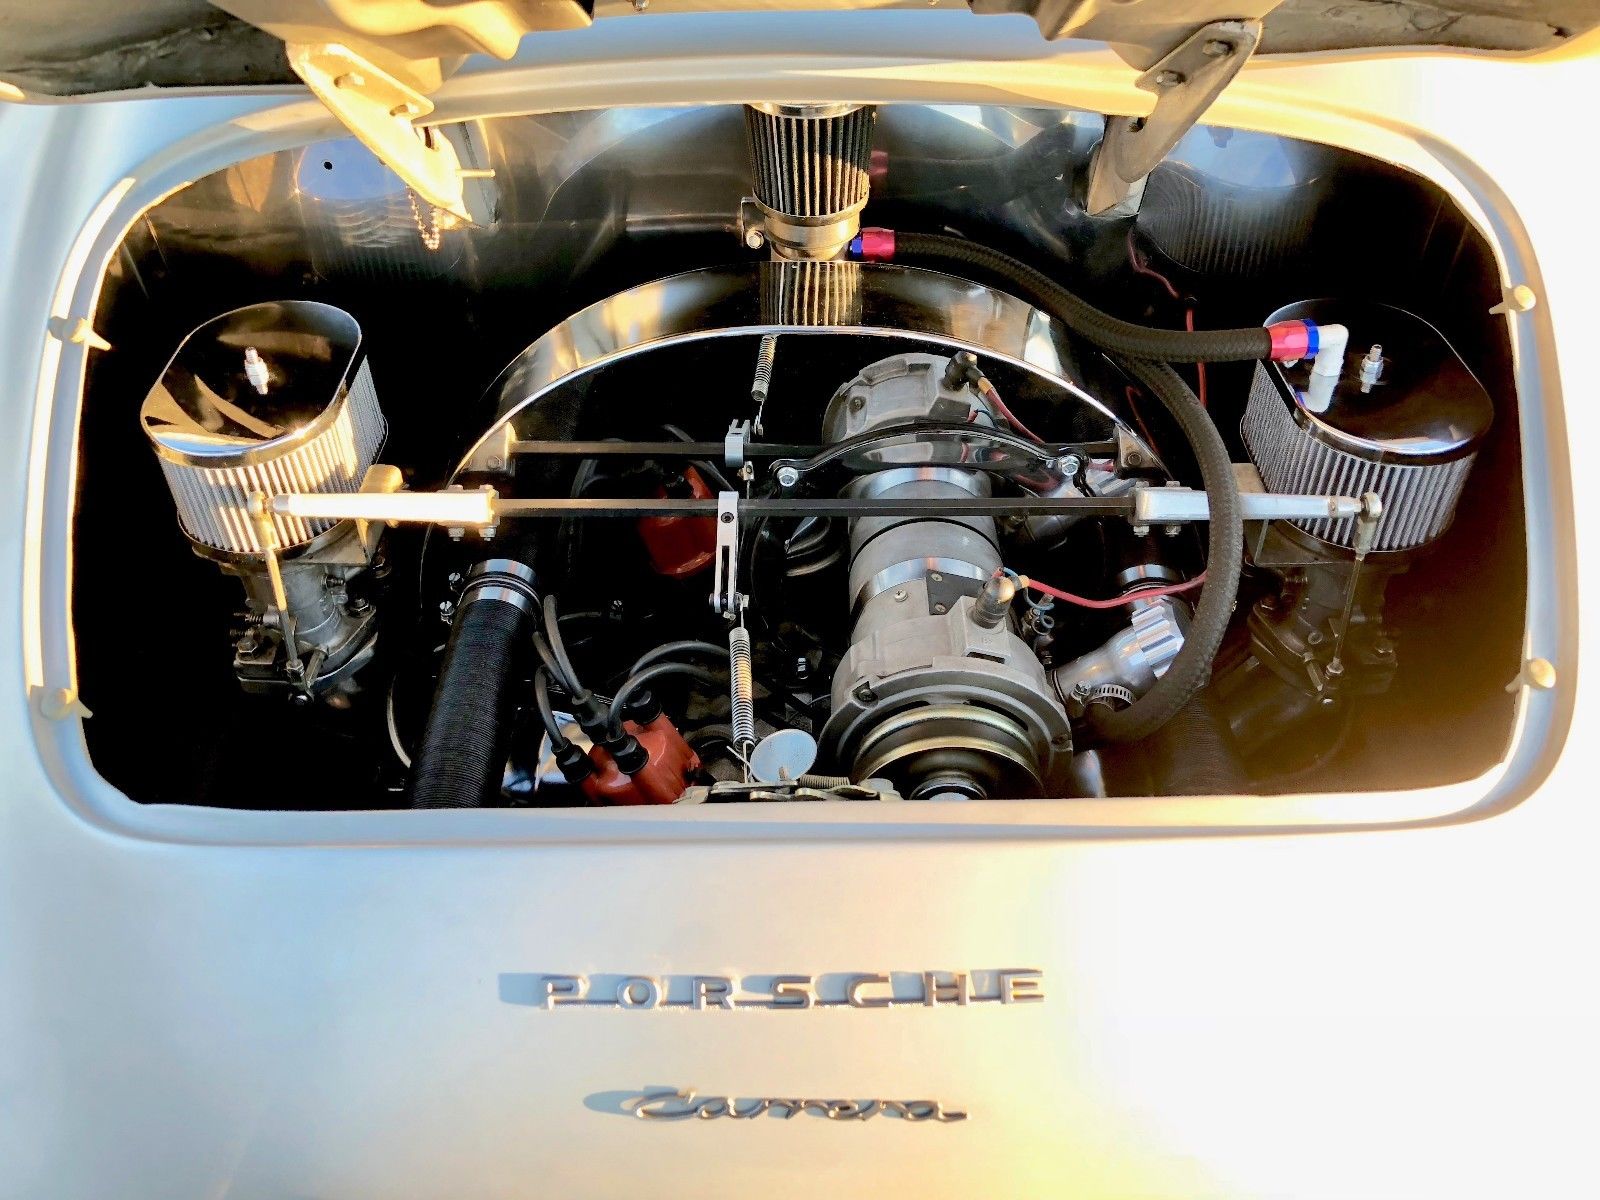 356 Speedster Outlaw Replica, Built In 2006 By Jps - Porsche 356 , HD Wallpaper & Backgrounds